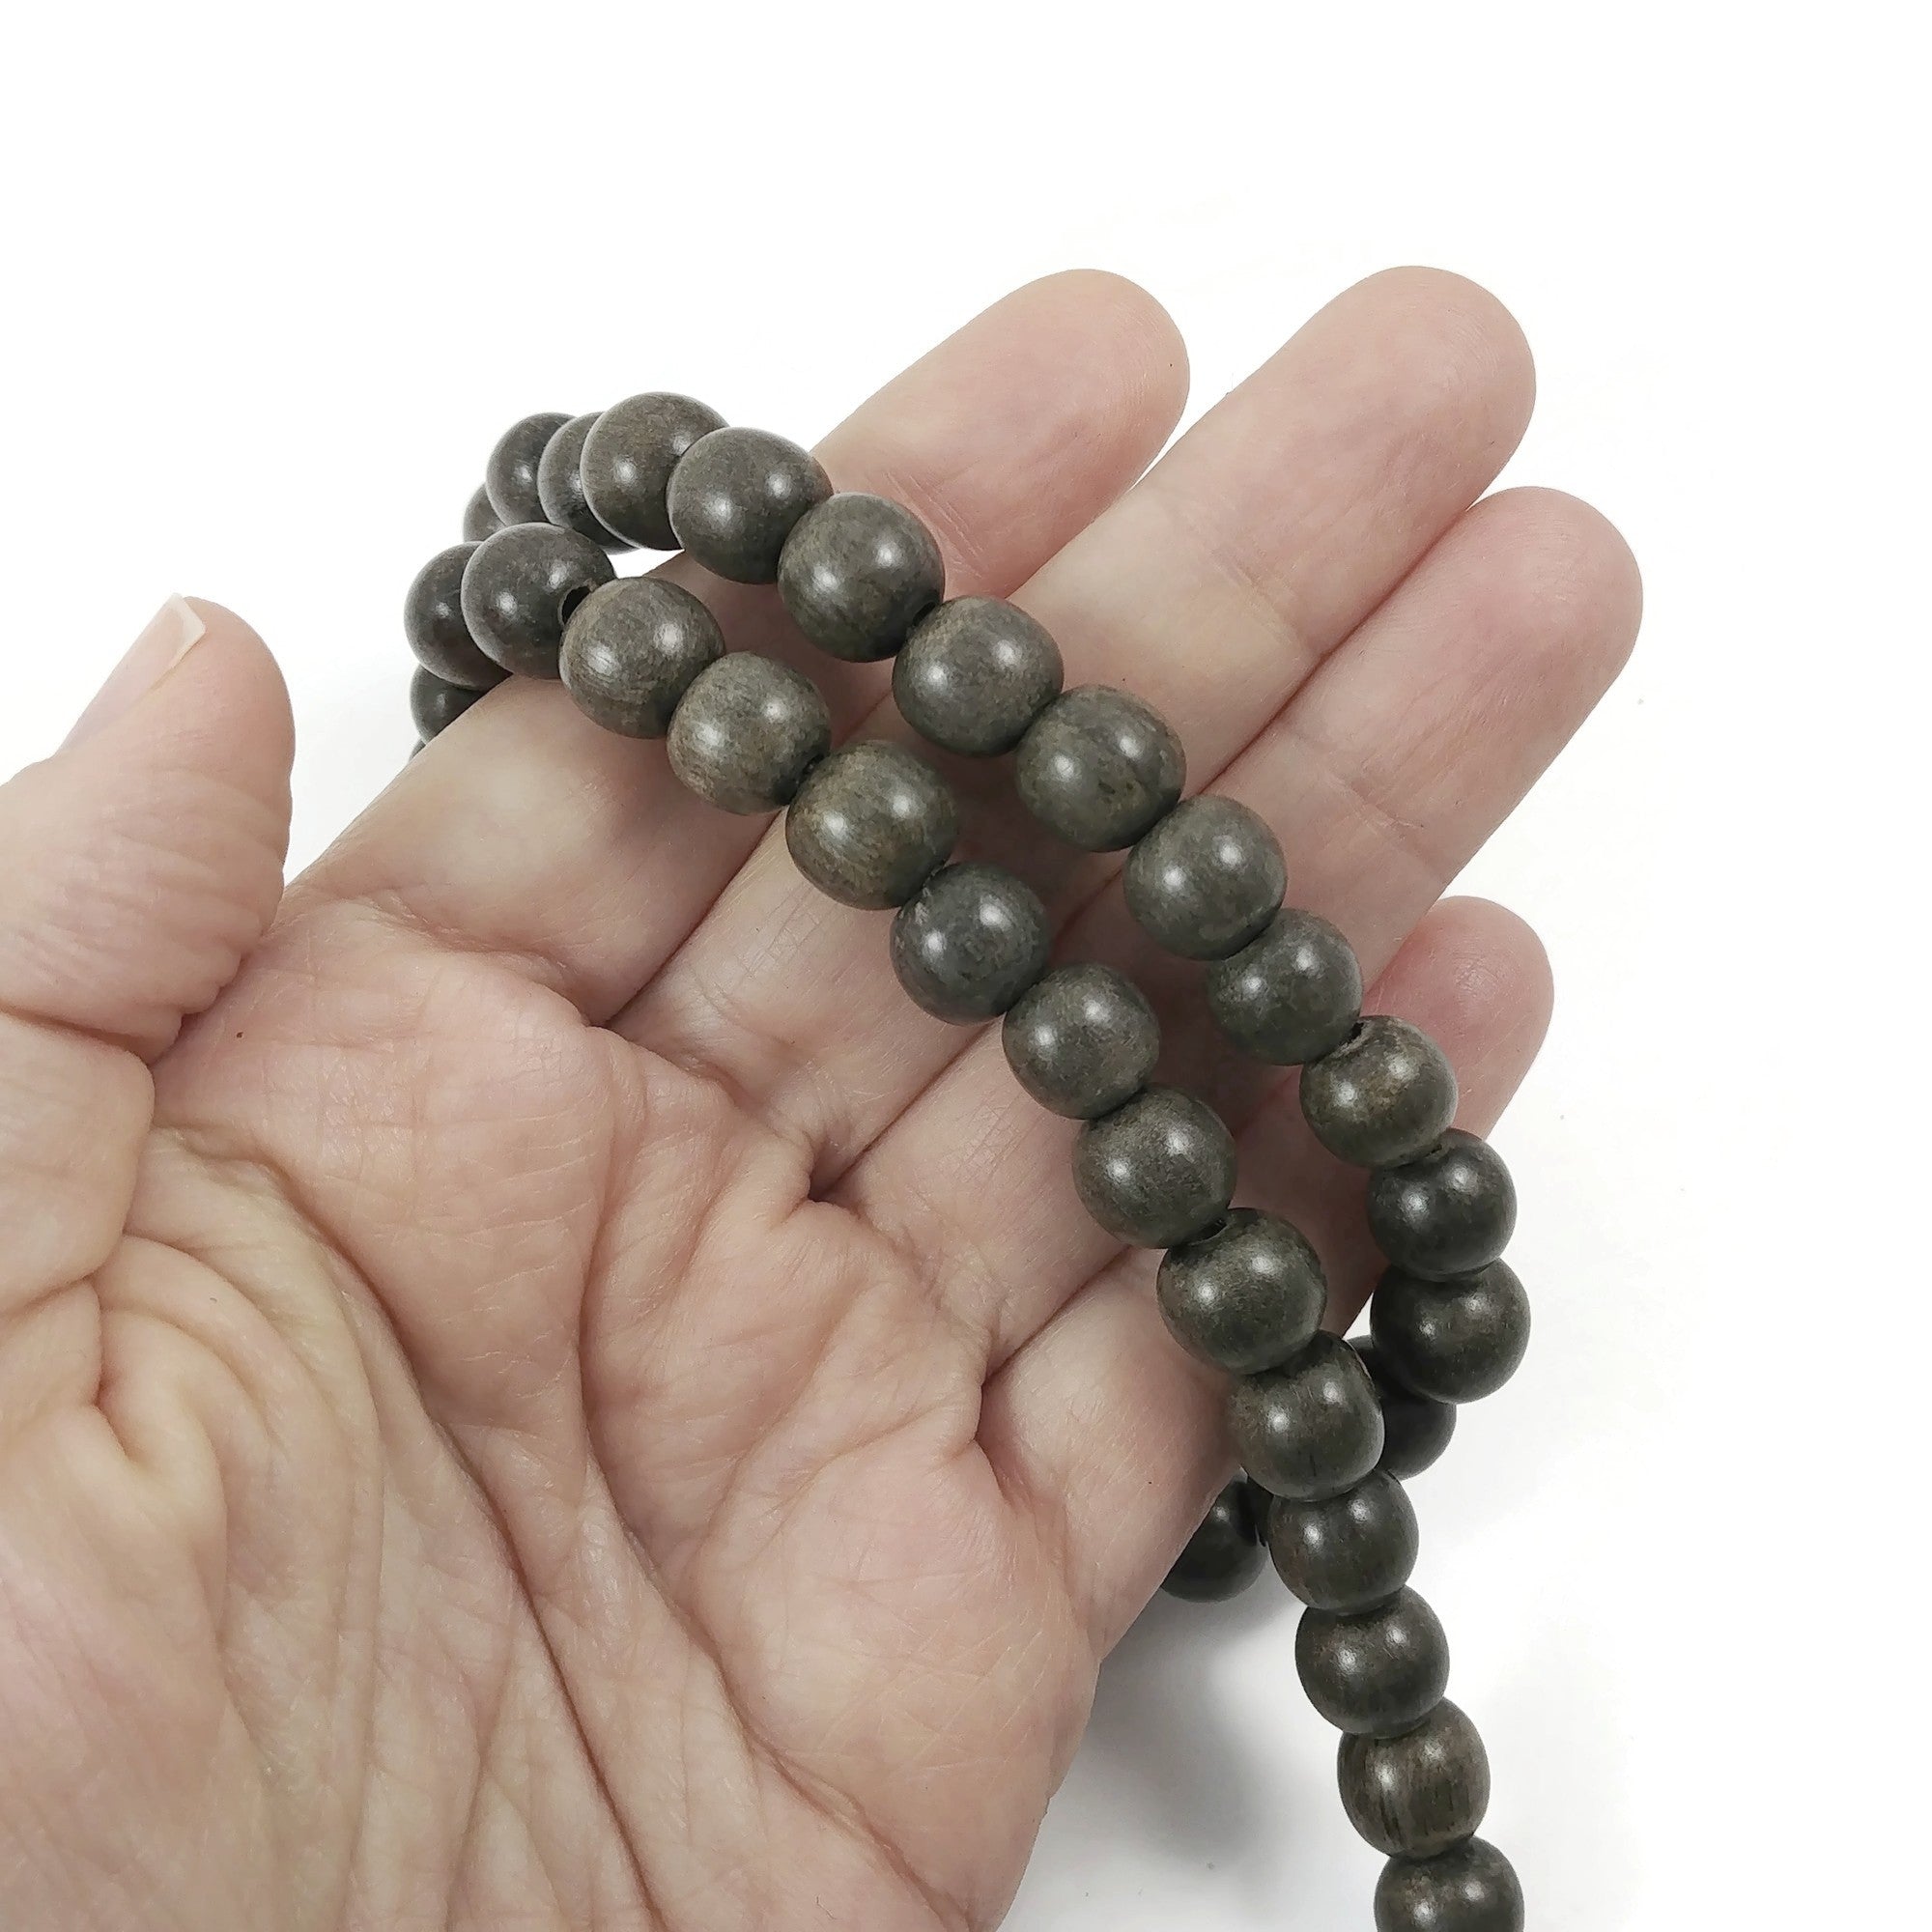 Perles de bois gris taupes rondes de 6mm, 8mm ou 10mm